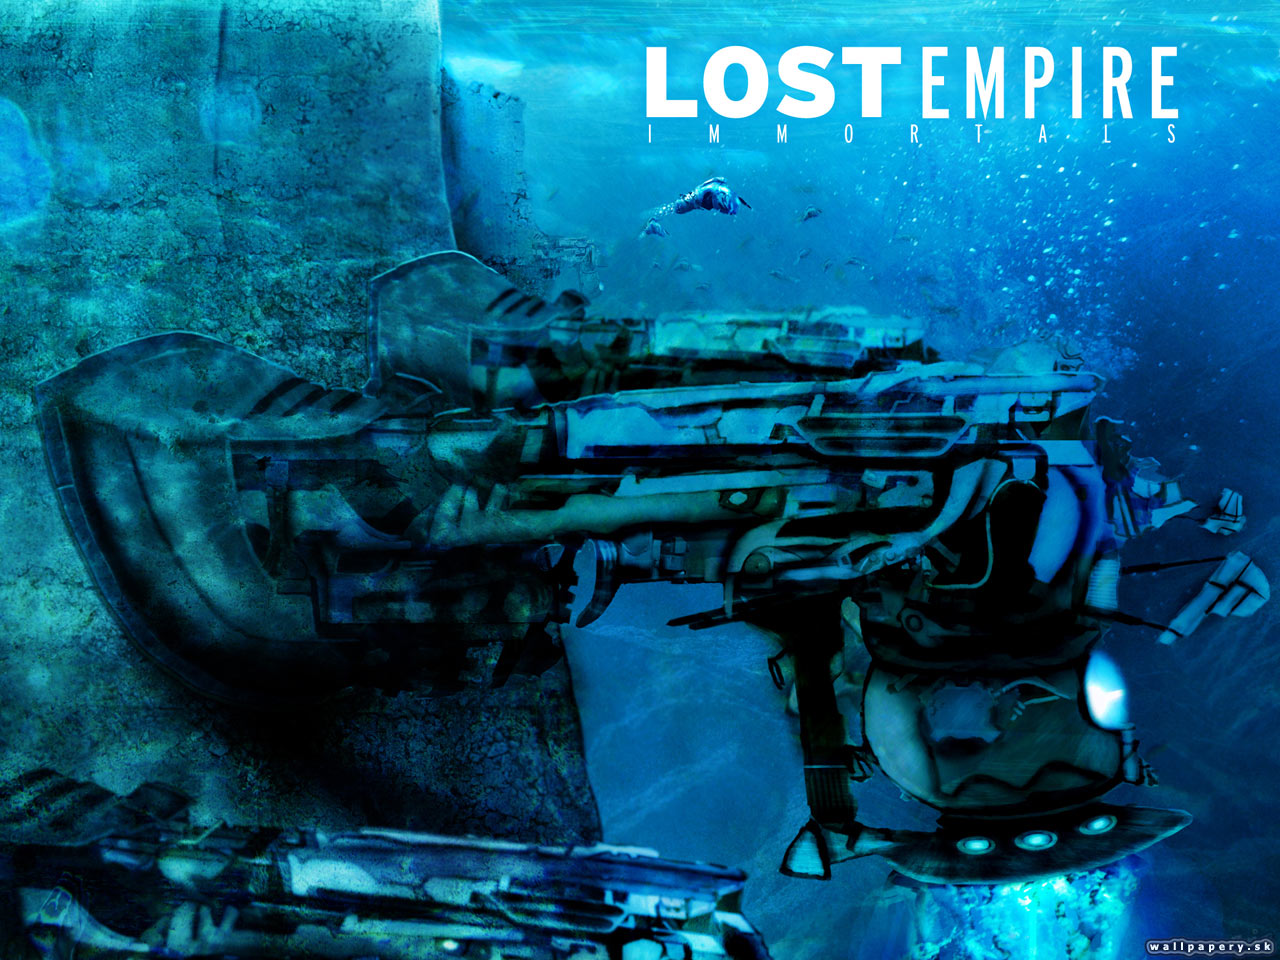 Lost Empire: Immortals - wallpaper 4